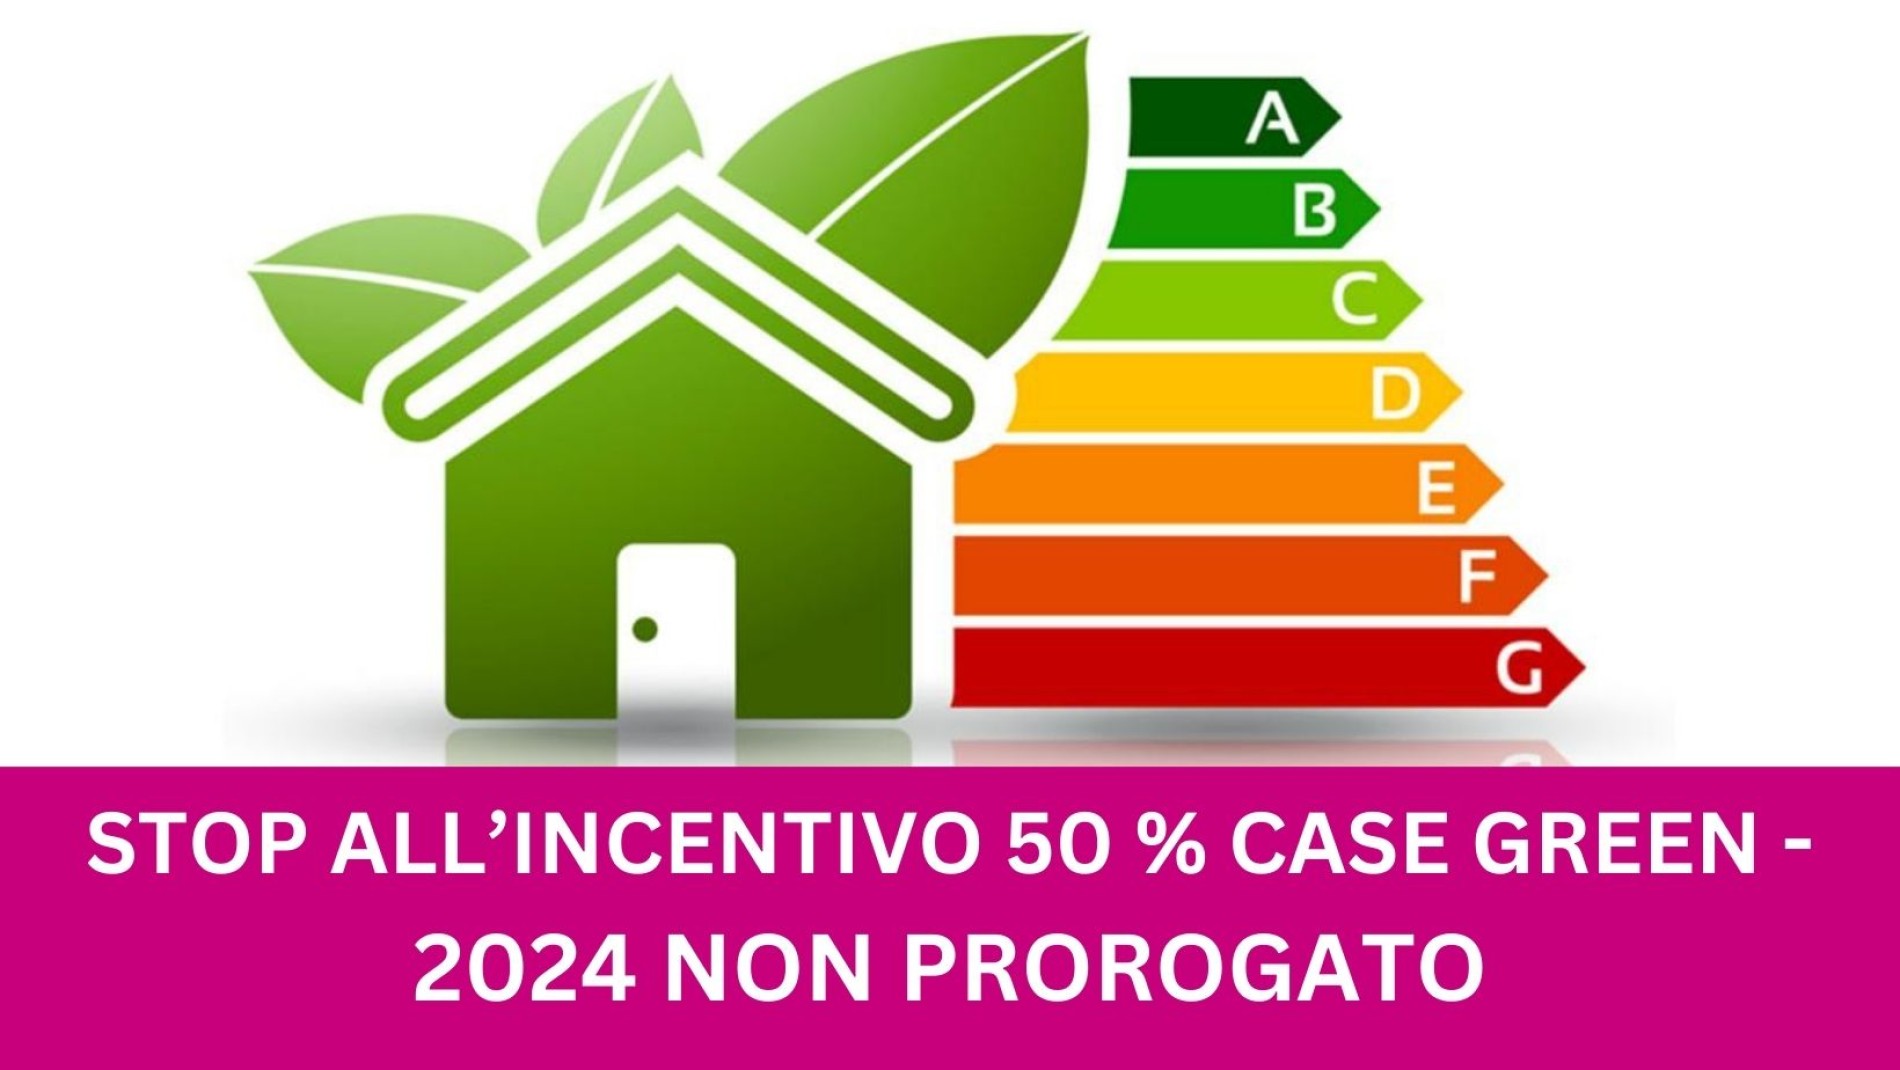 2024 NON PROROGATO - STOP ALL'INCENTIVO 50 % CASE GREEN 